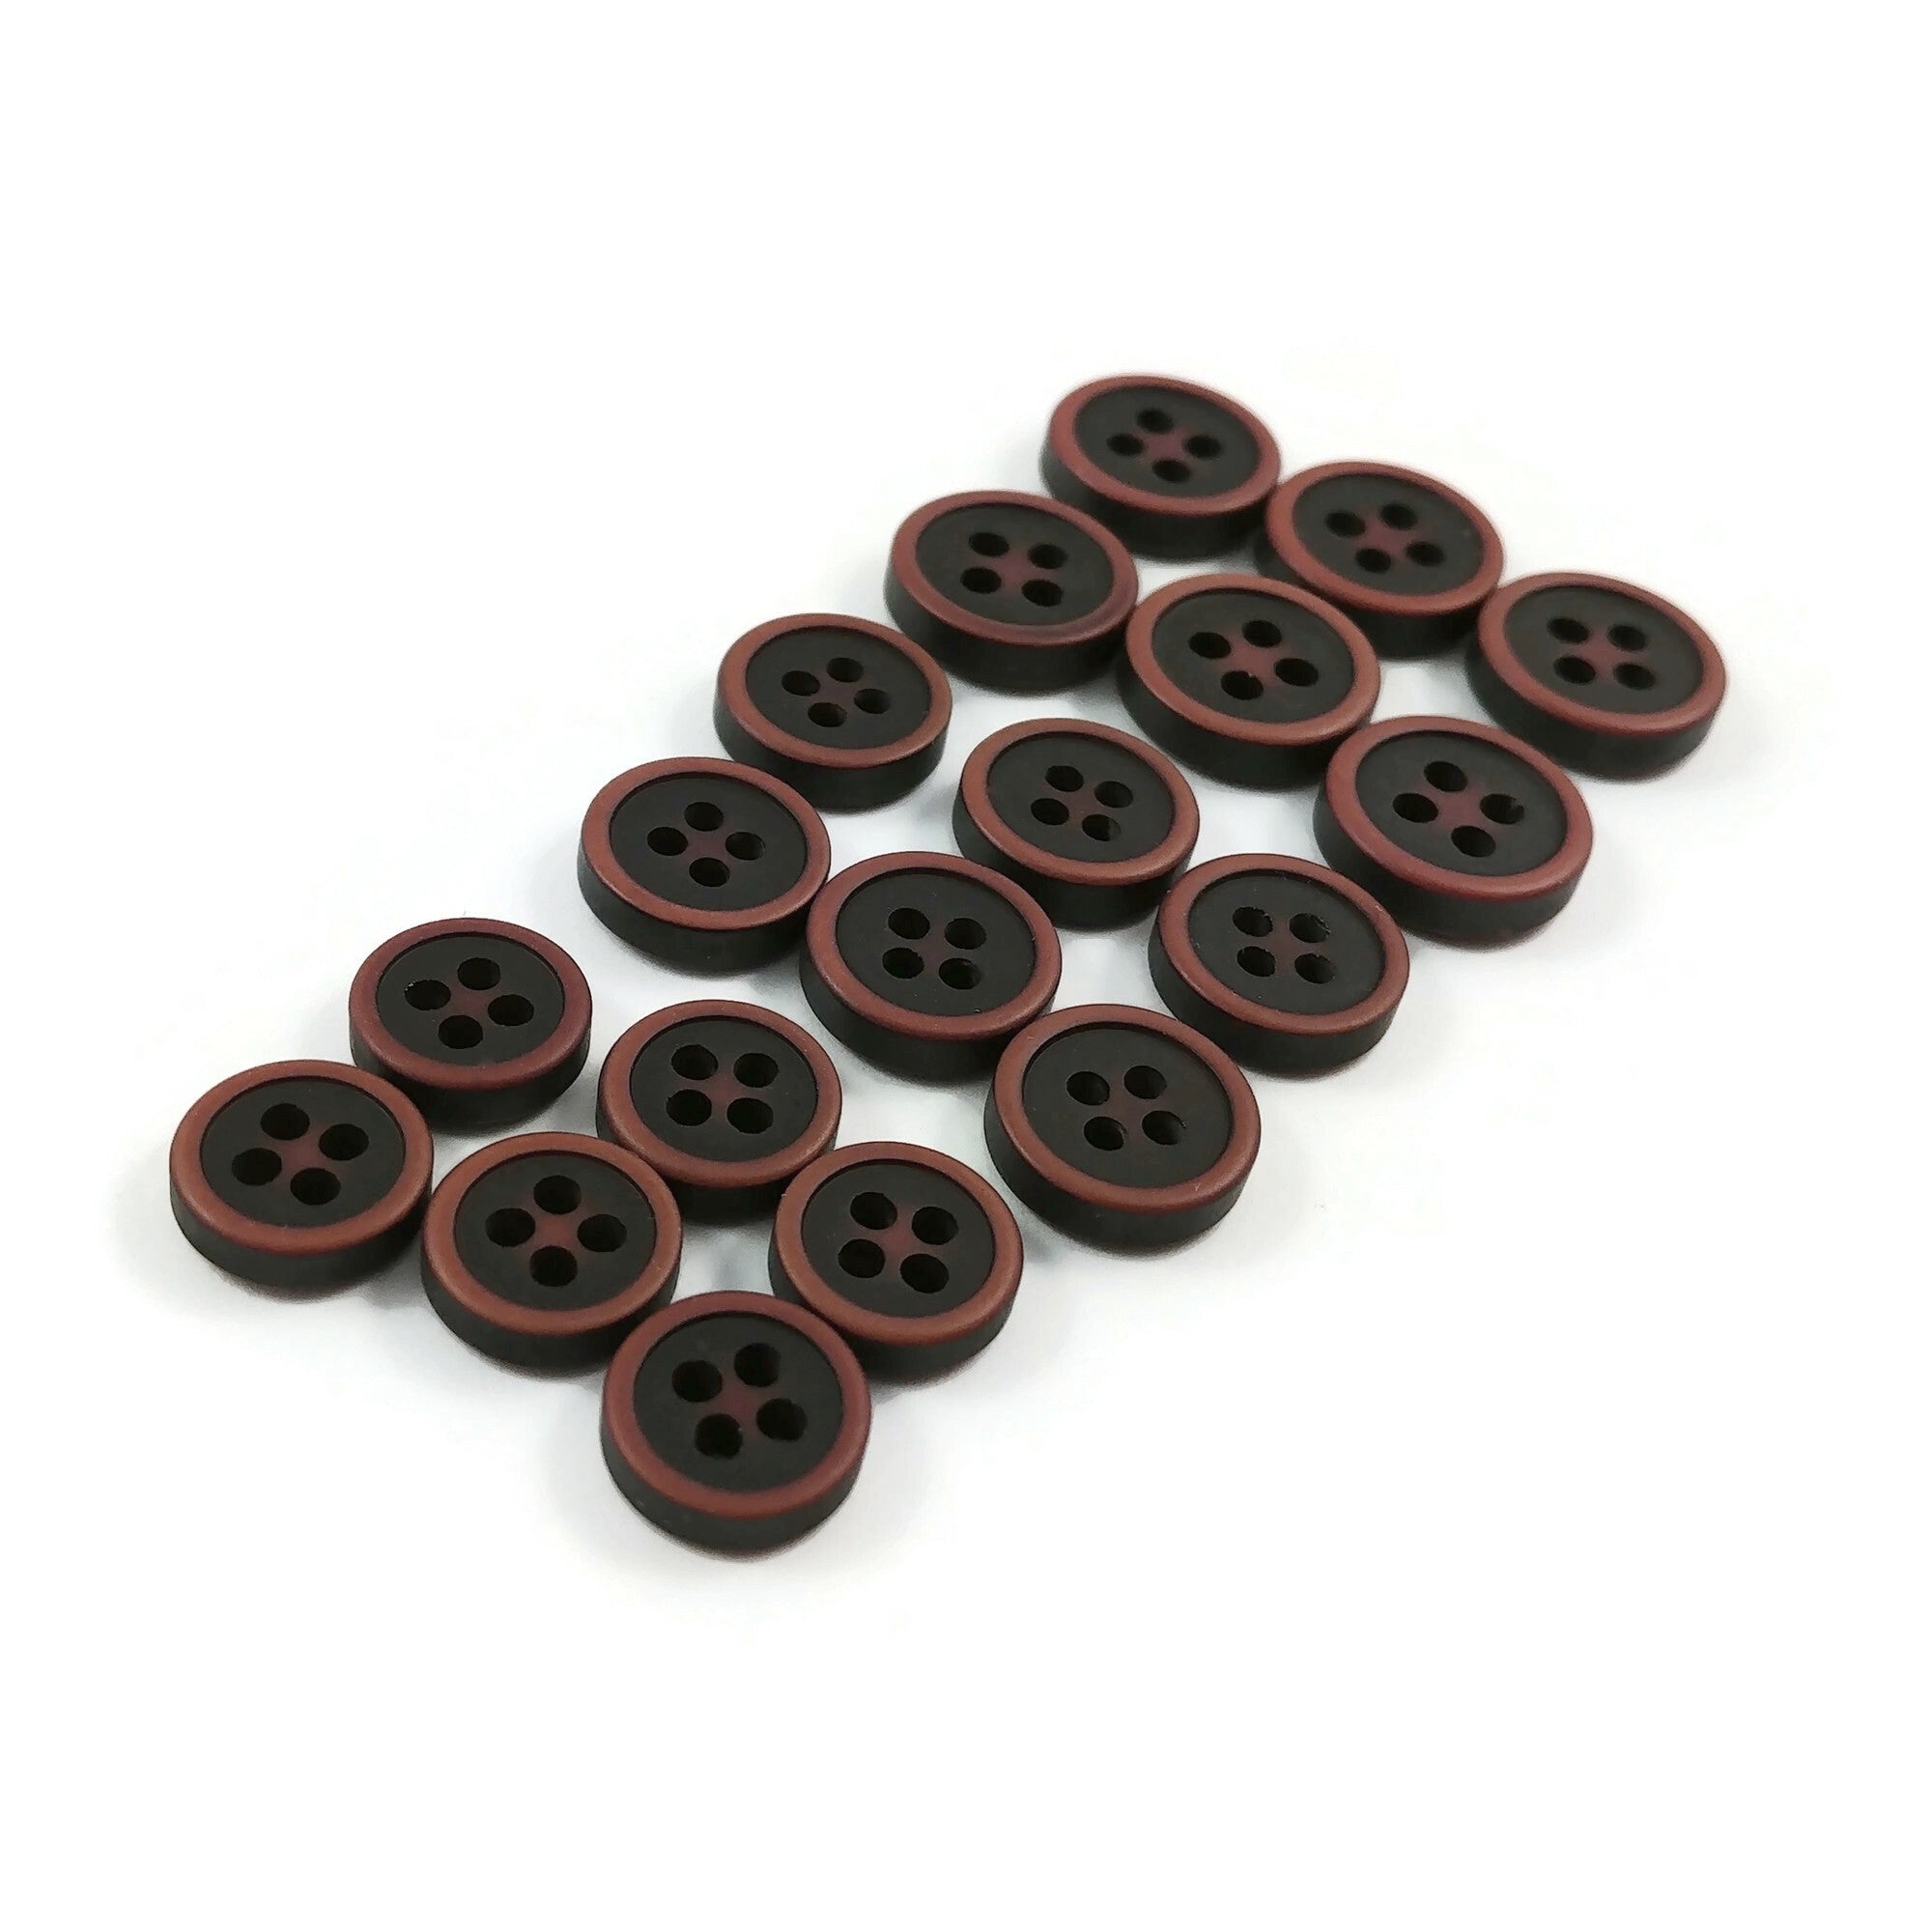 20.5 mm Black/Brown Button  Set of 3 - Stolen Stitches